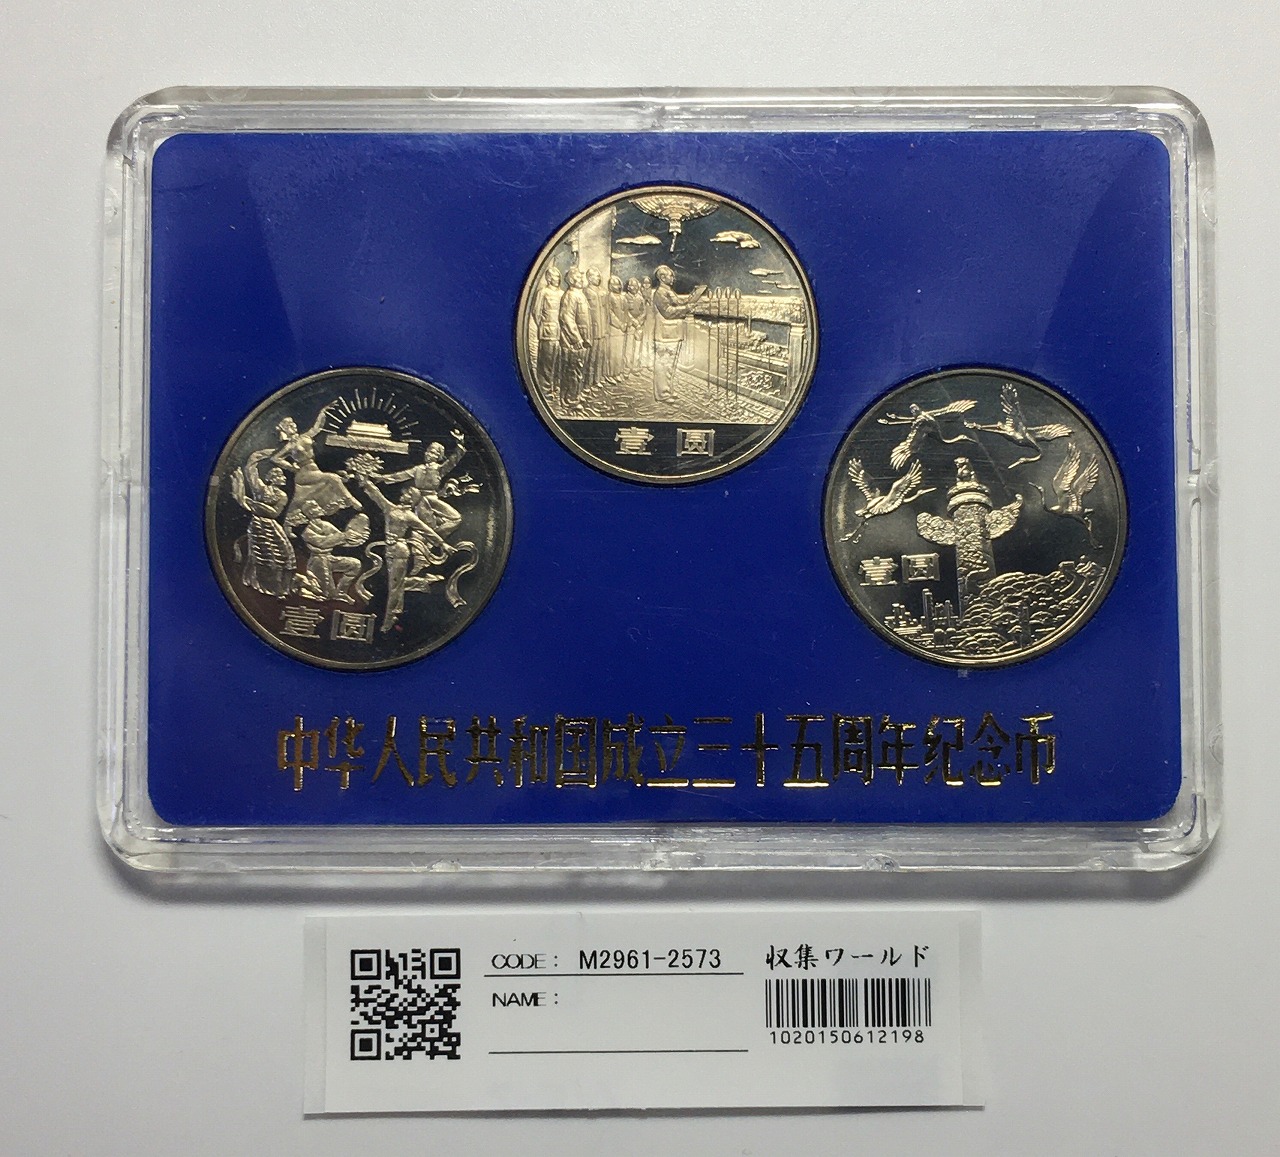 ホビー・楽器・アート古い中国の銀貨 - 3 枚セット